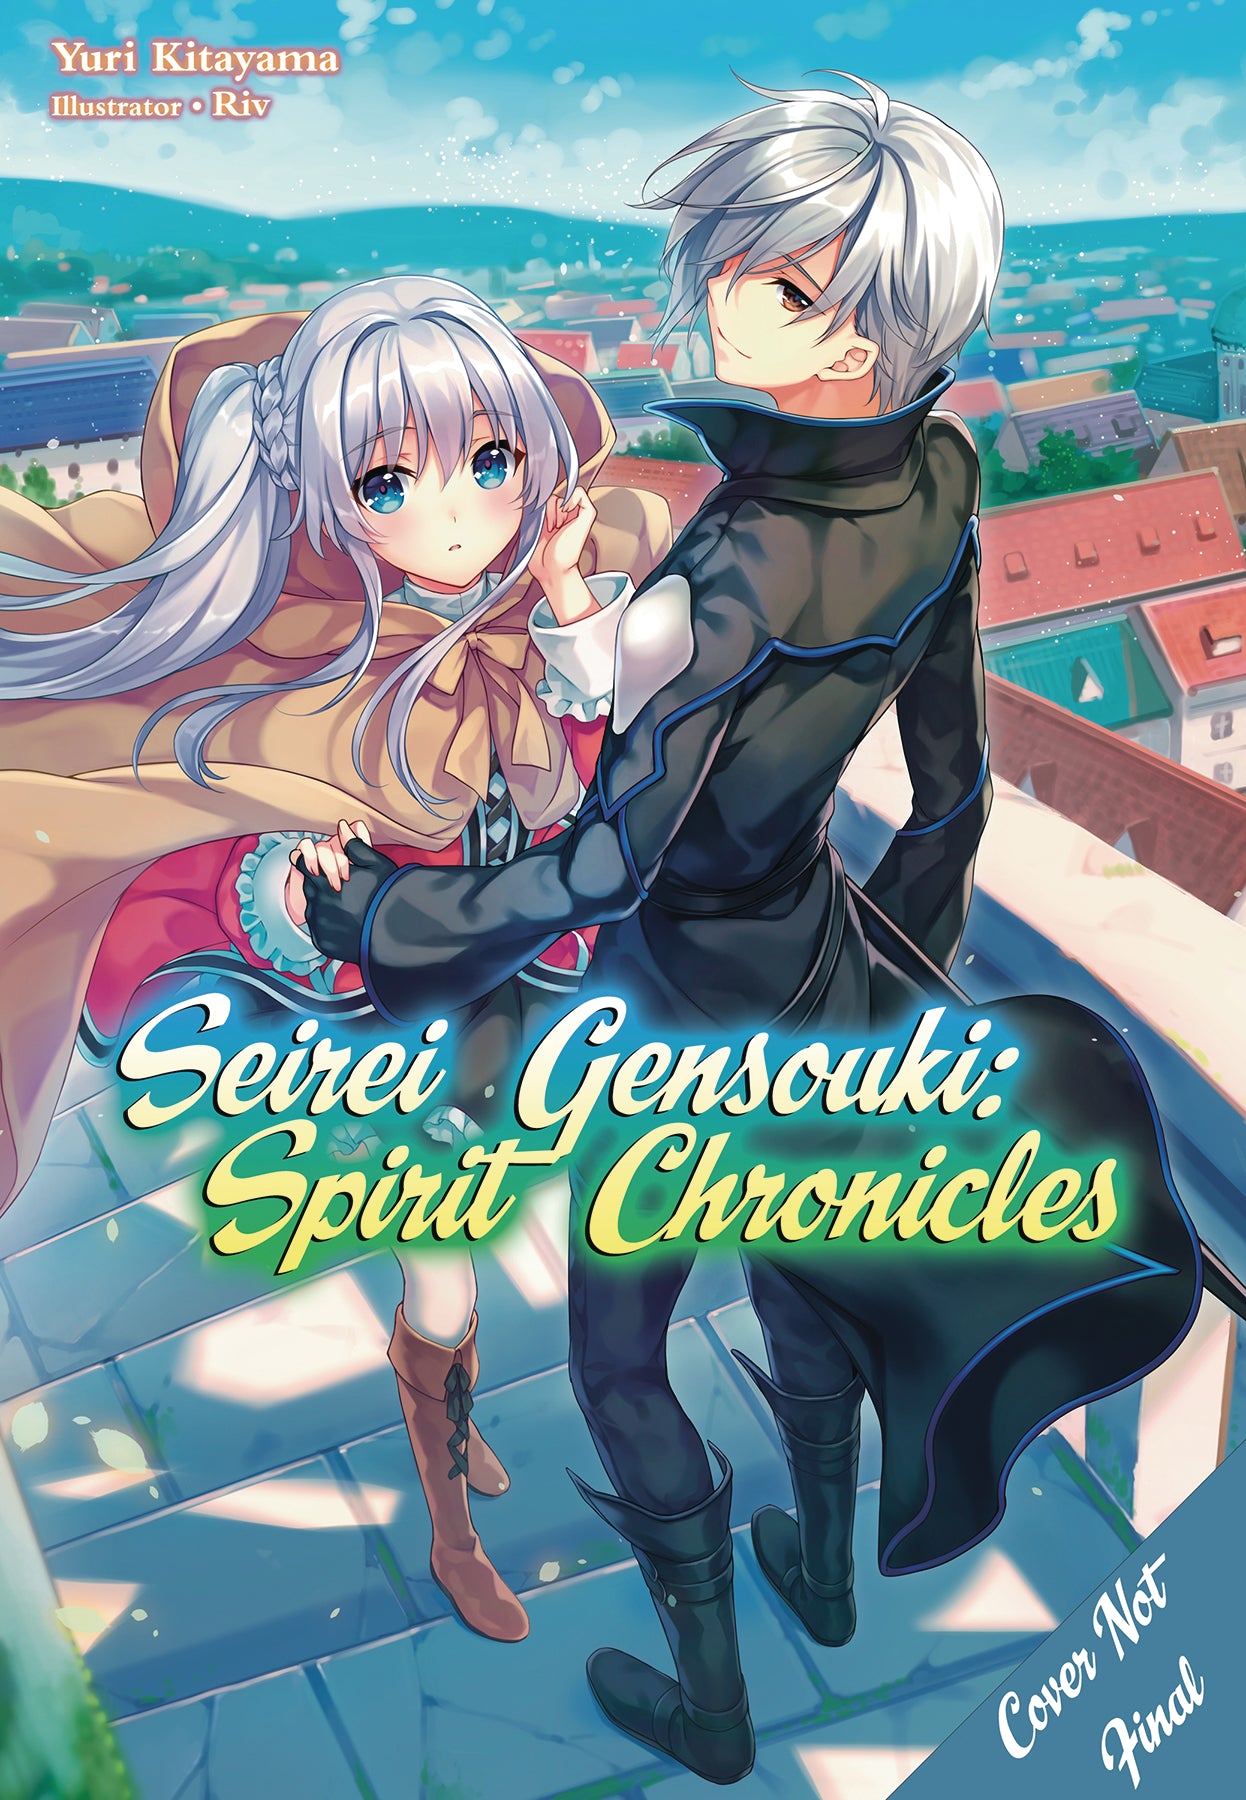 Seirei Gensouki - Spirit Chronicles Next Episode Air Da